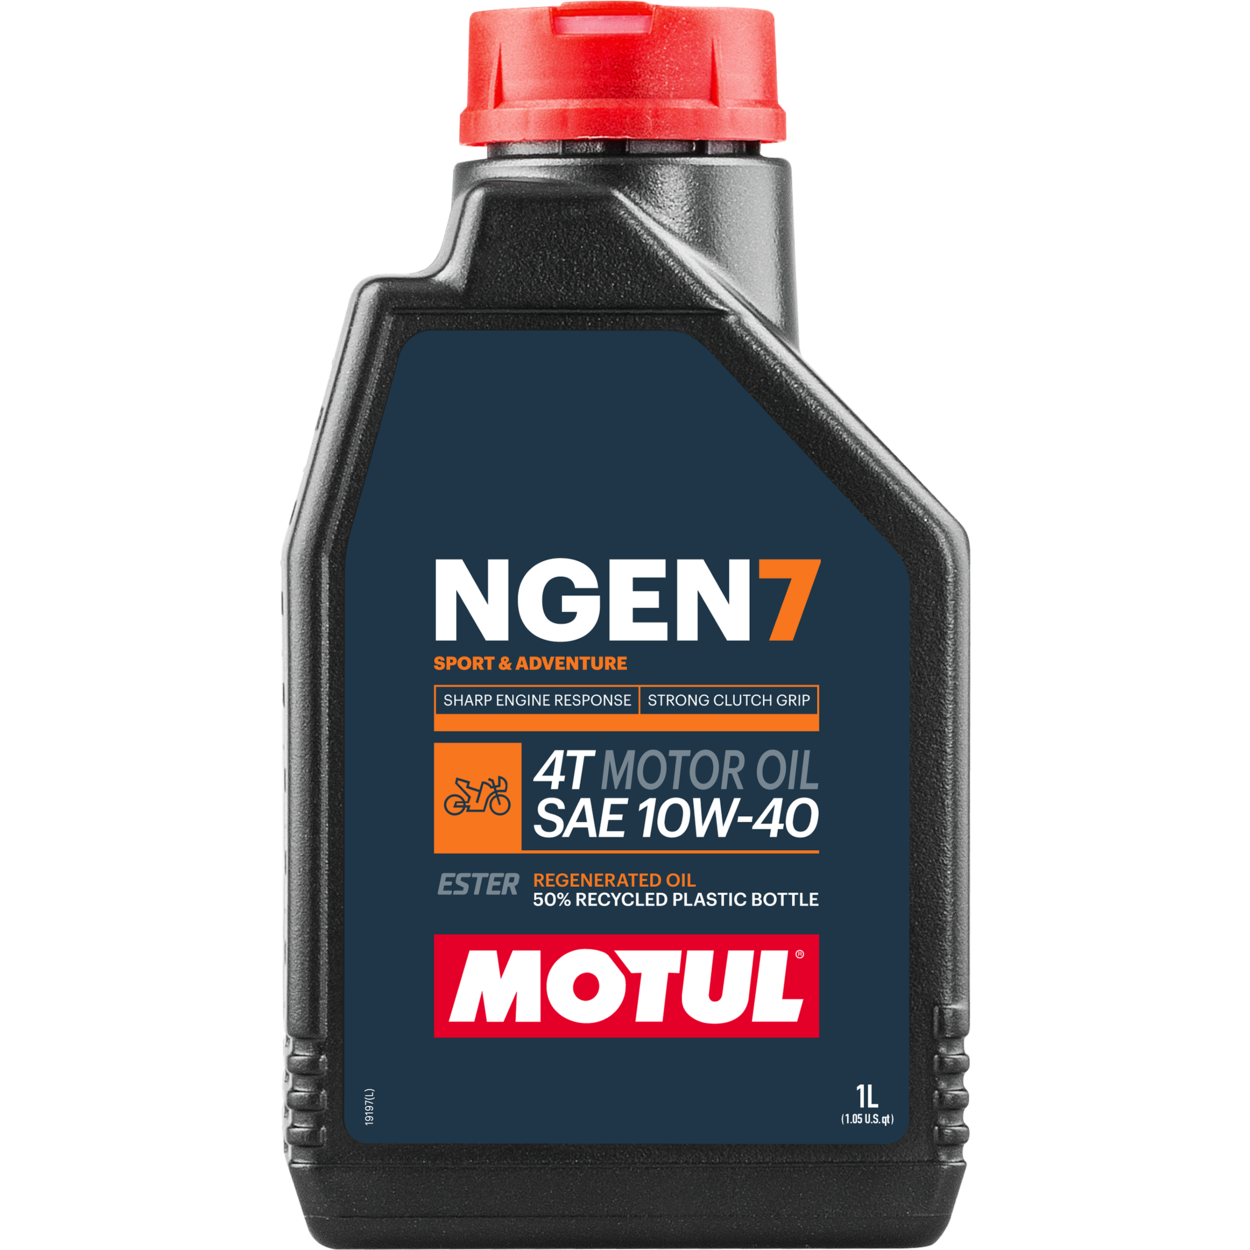 111835-1 MOTUL NGEN 7 10W-40 4T est la meilleure huile moteur 4 temps de sa catégorie, basée sur une combinaison d'huiles de base vierges et d'additifs les plus fins, mélangés à des esters synthétiques et des huiles régénérées de haute qualité.